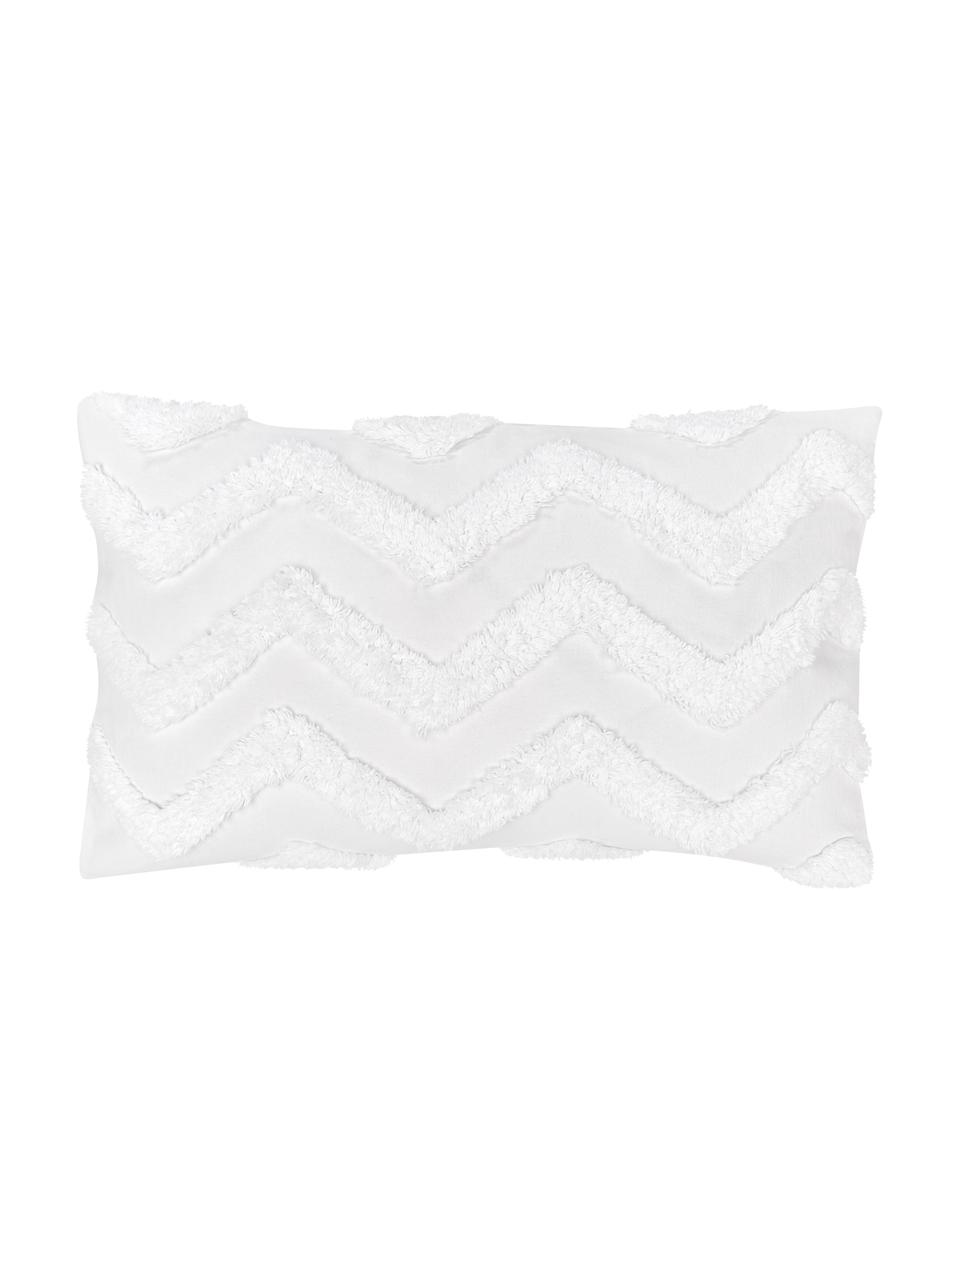 Kissenhülle Zack mit getuftetem Muster, 100% Baumwolle, Weiss, 30 x 50 cm